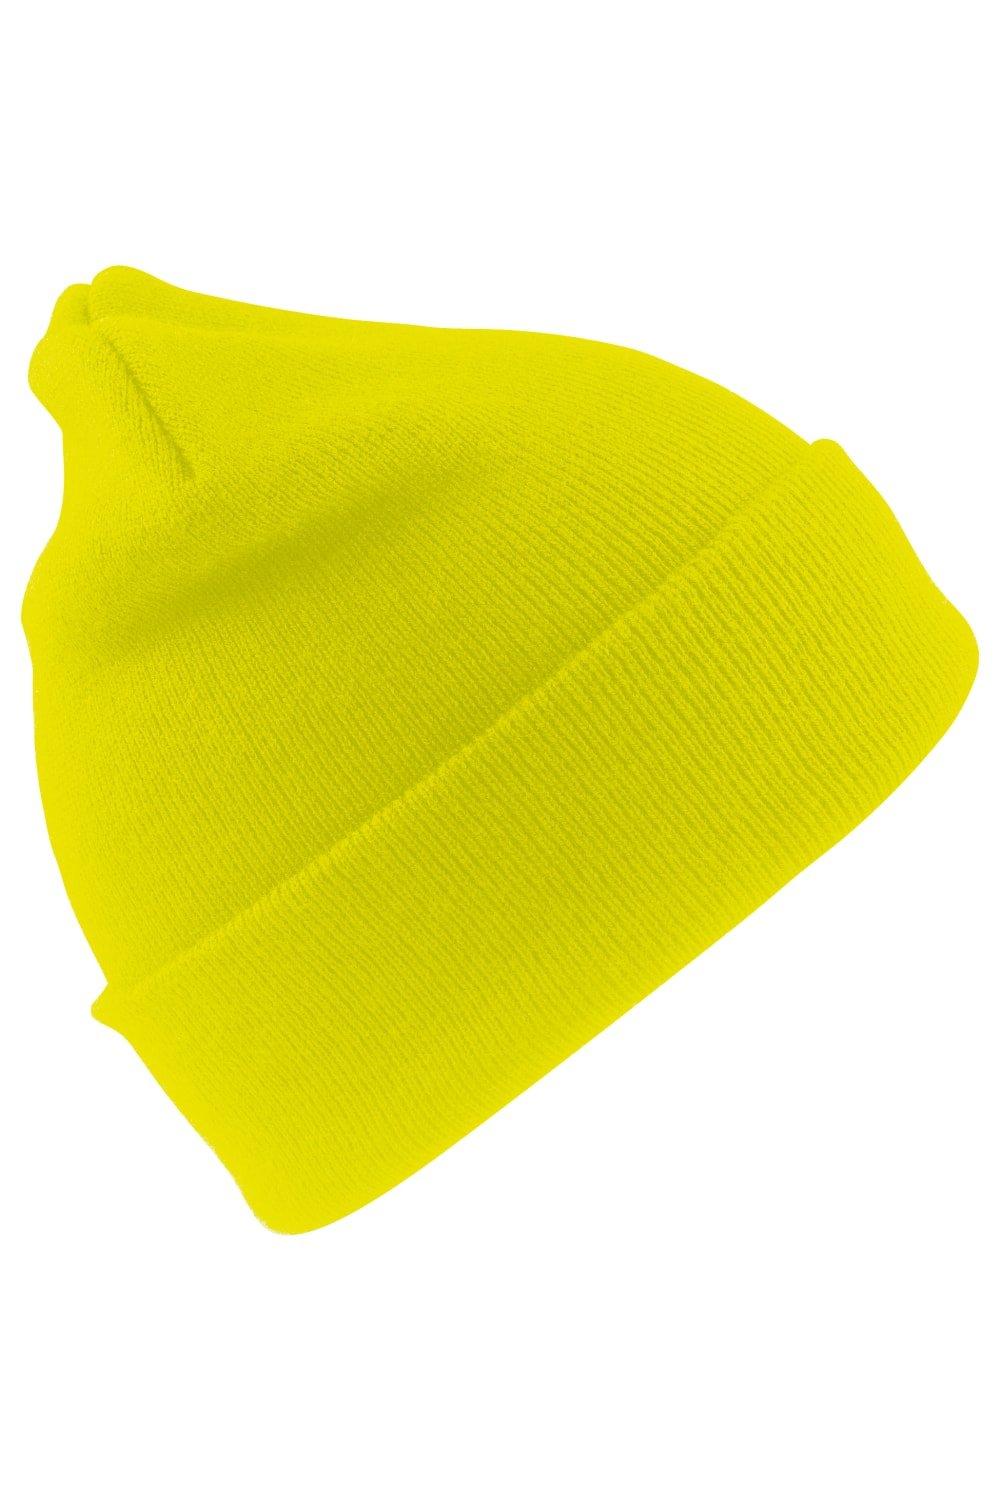 Шерстяная термолыжная/зимняя шапка с утеплителем Thinsulate 3M Result, желтый пряжа семеновская пряжа lily 123 светло сиреневый 5 шт по 100 г